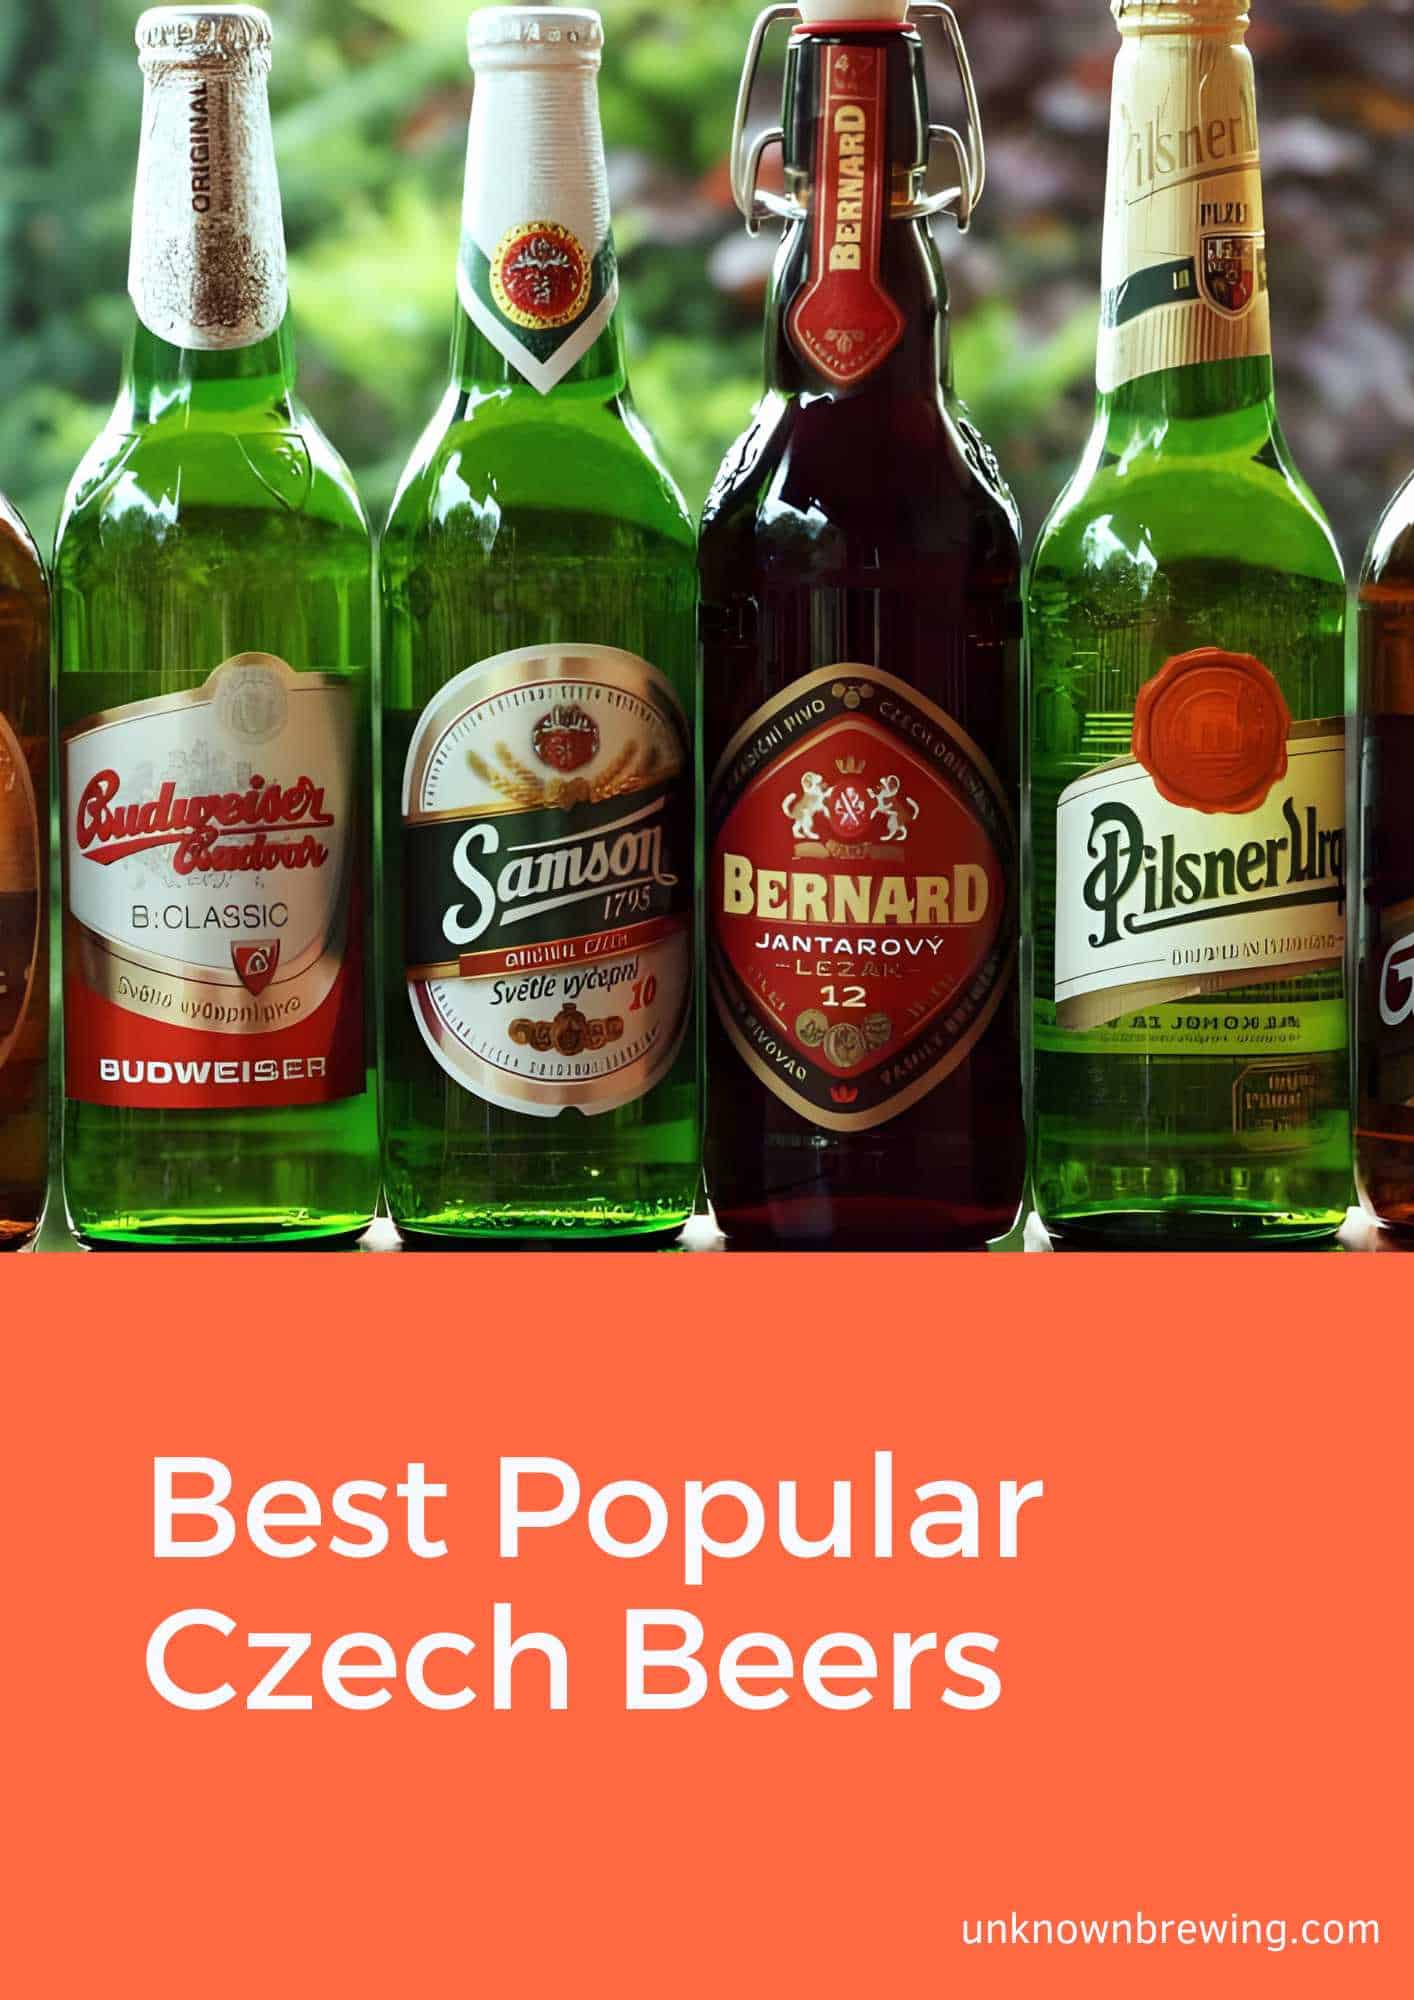 Best Popular Czech Beers